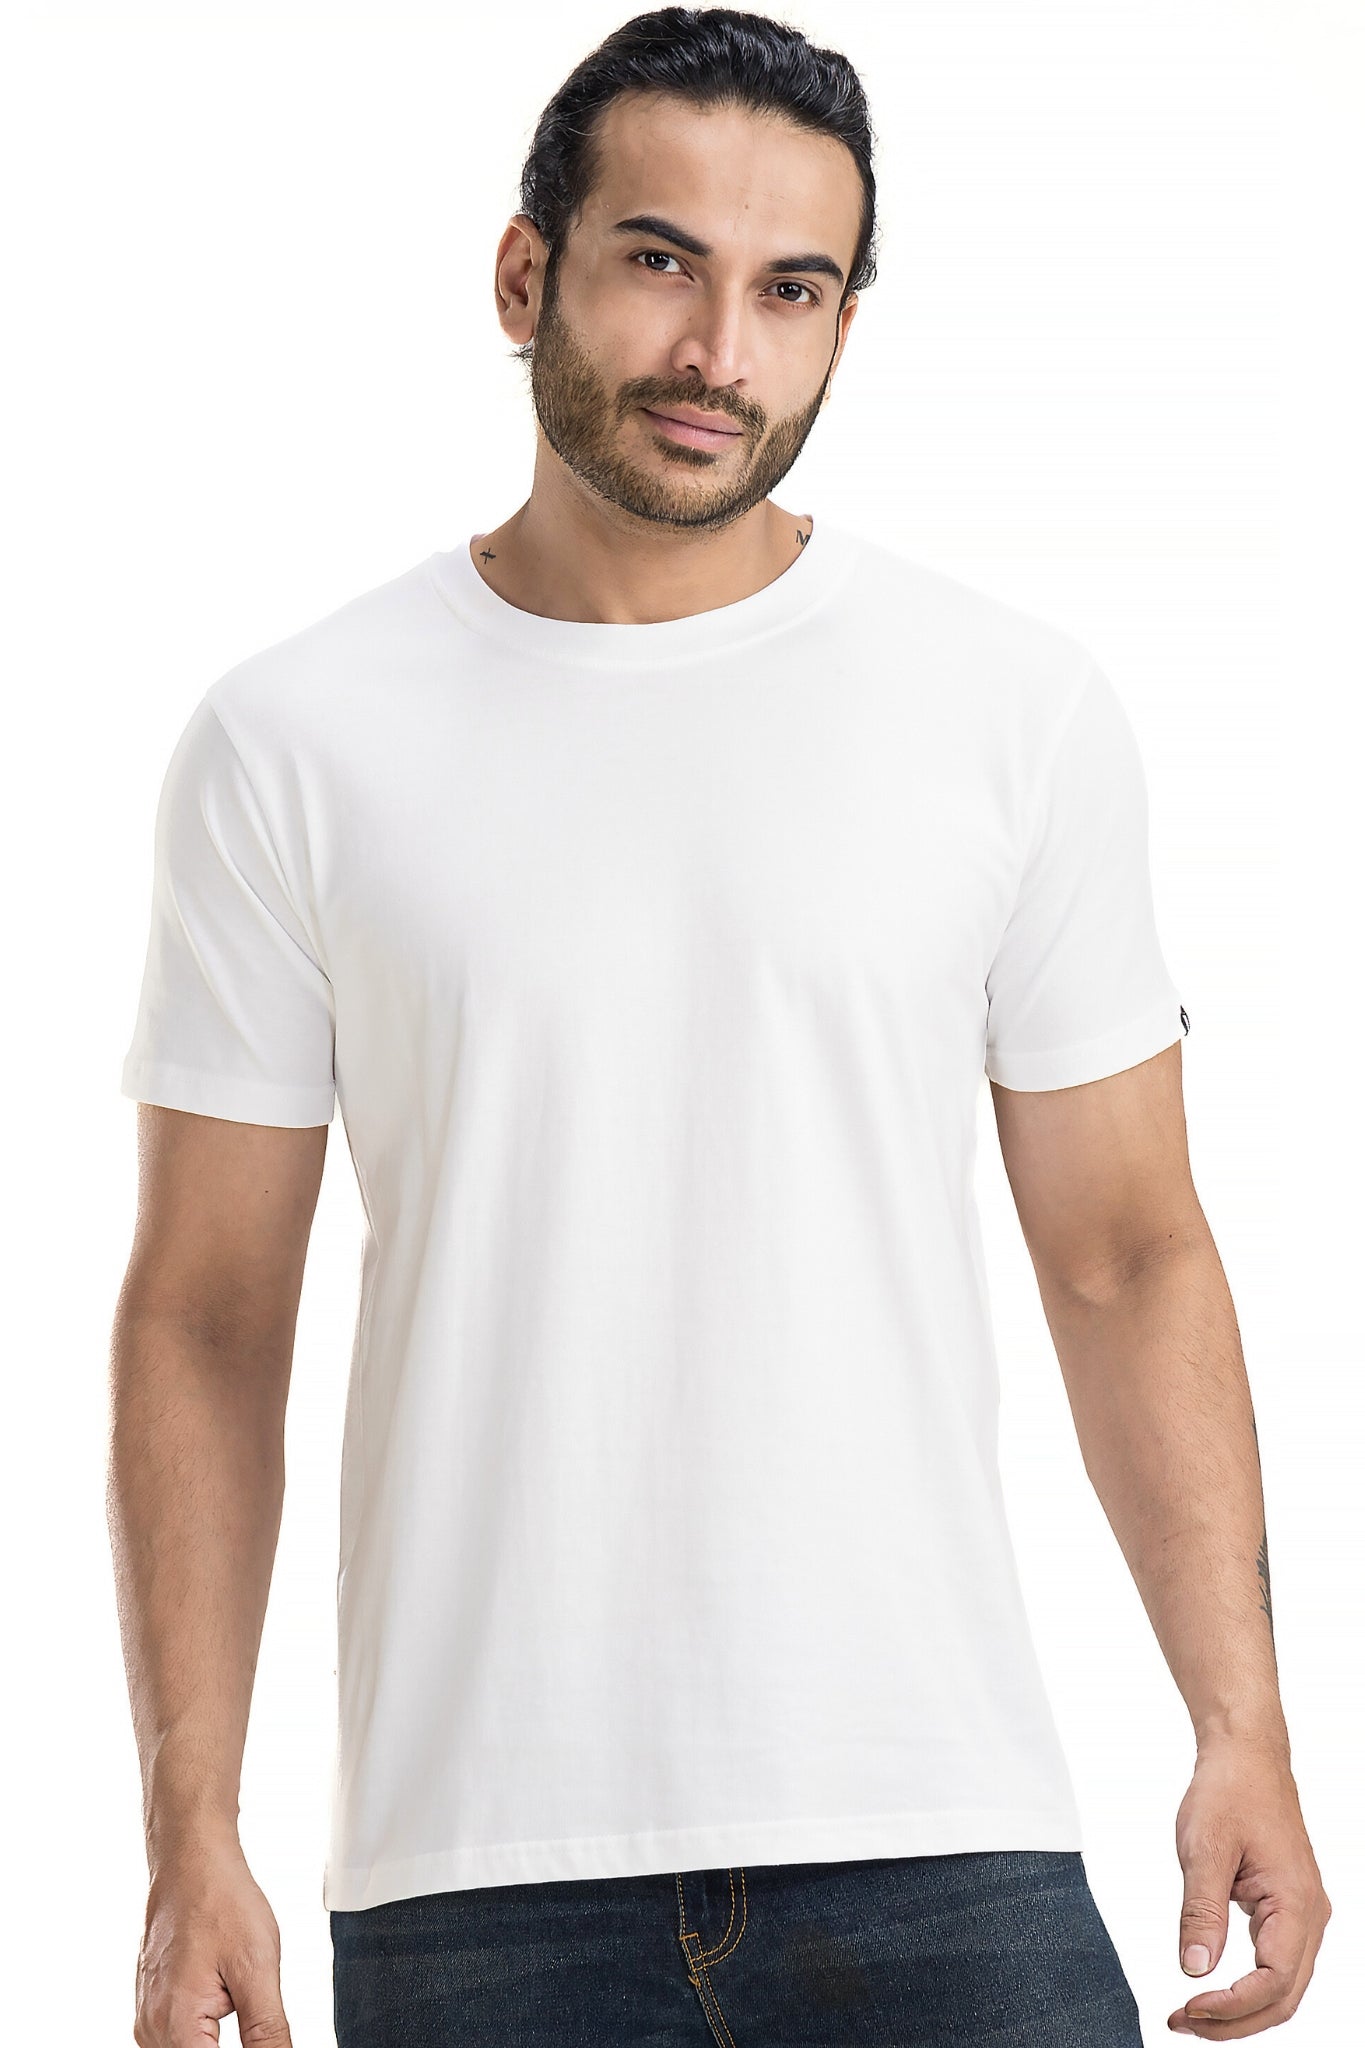 Men's Solid Basic White T-Shirt